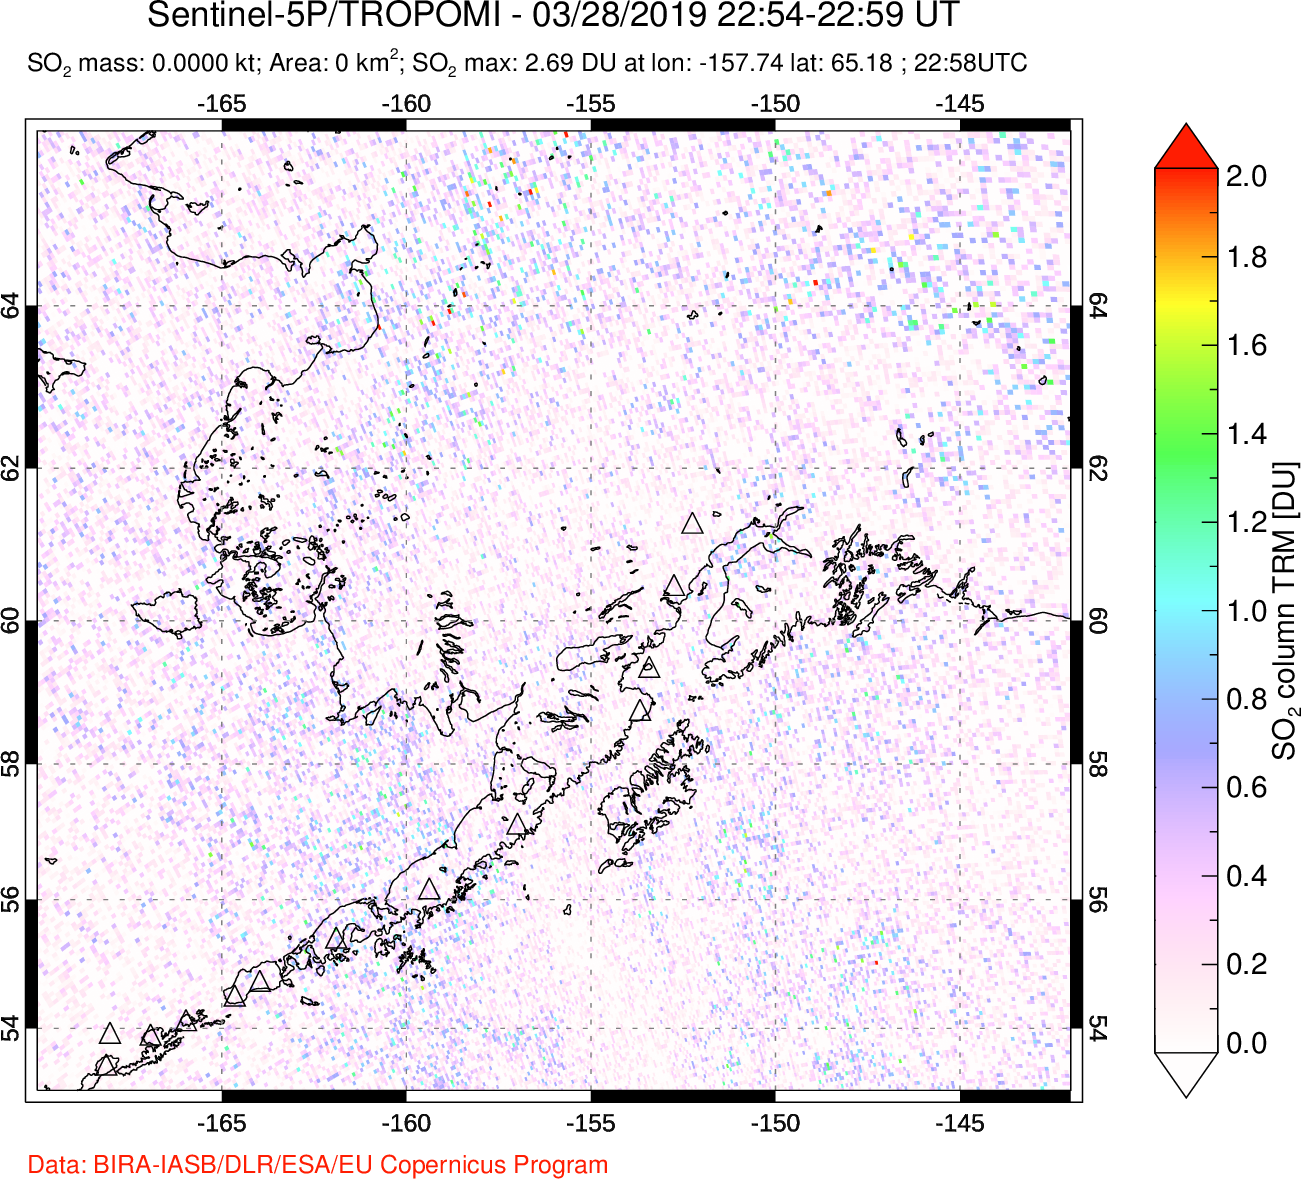 A sulfur dioxide image over Alaska, USA on Mar 28, 2019.